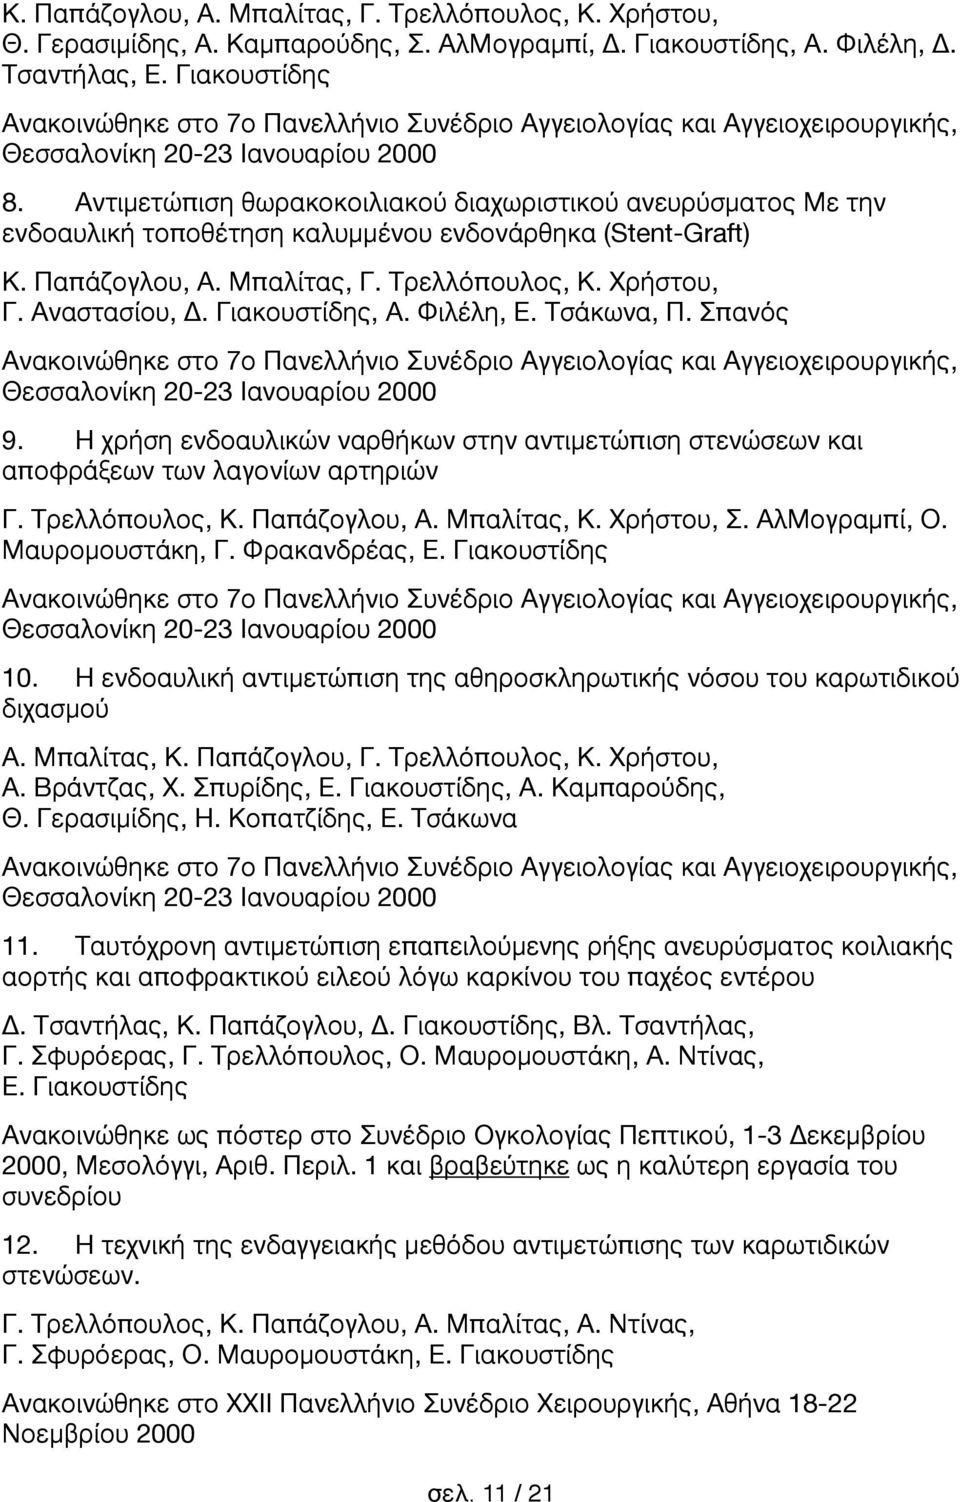 Αντιμετώπιση θωρακοκοιλιακού διαχωριστικού ανευρύσματος Με την ενδοαυλική τοποθέτηση καλυμμένου ενδονάρθηκα (Stent-Graft) Κ. Παπάζογλου, Α. Μπαλίτας, Γ. Τρελλόπουλος, Κ. Χρήστου, Γ. Αναστασίου, Δ.